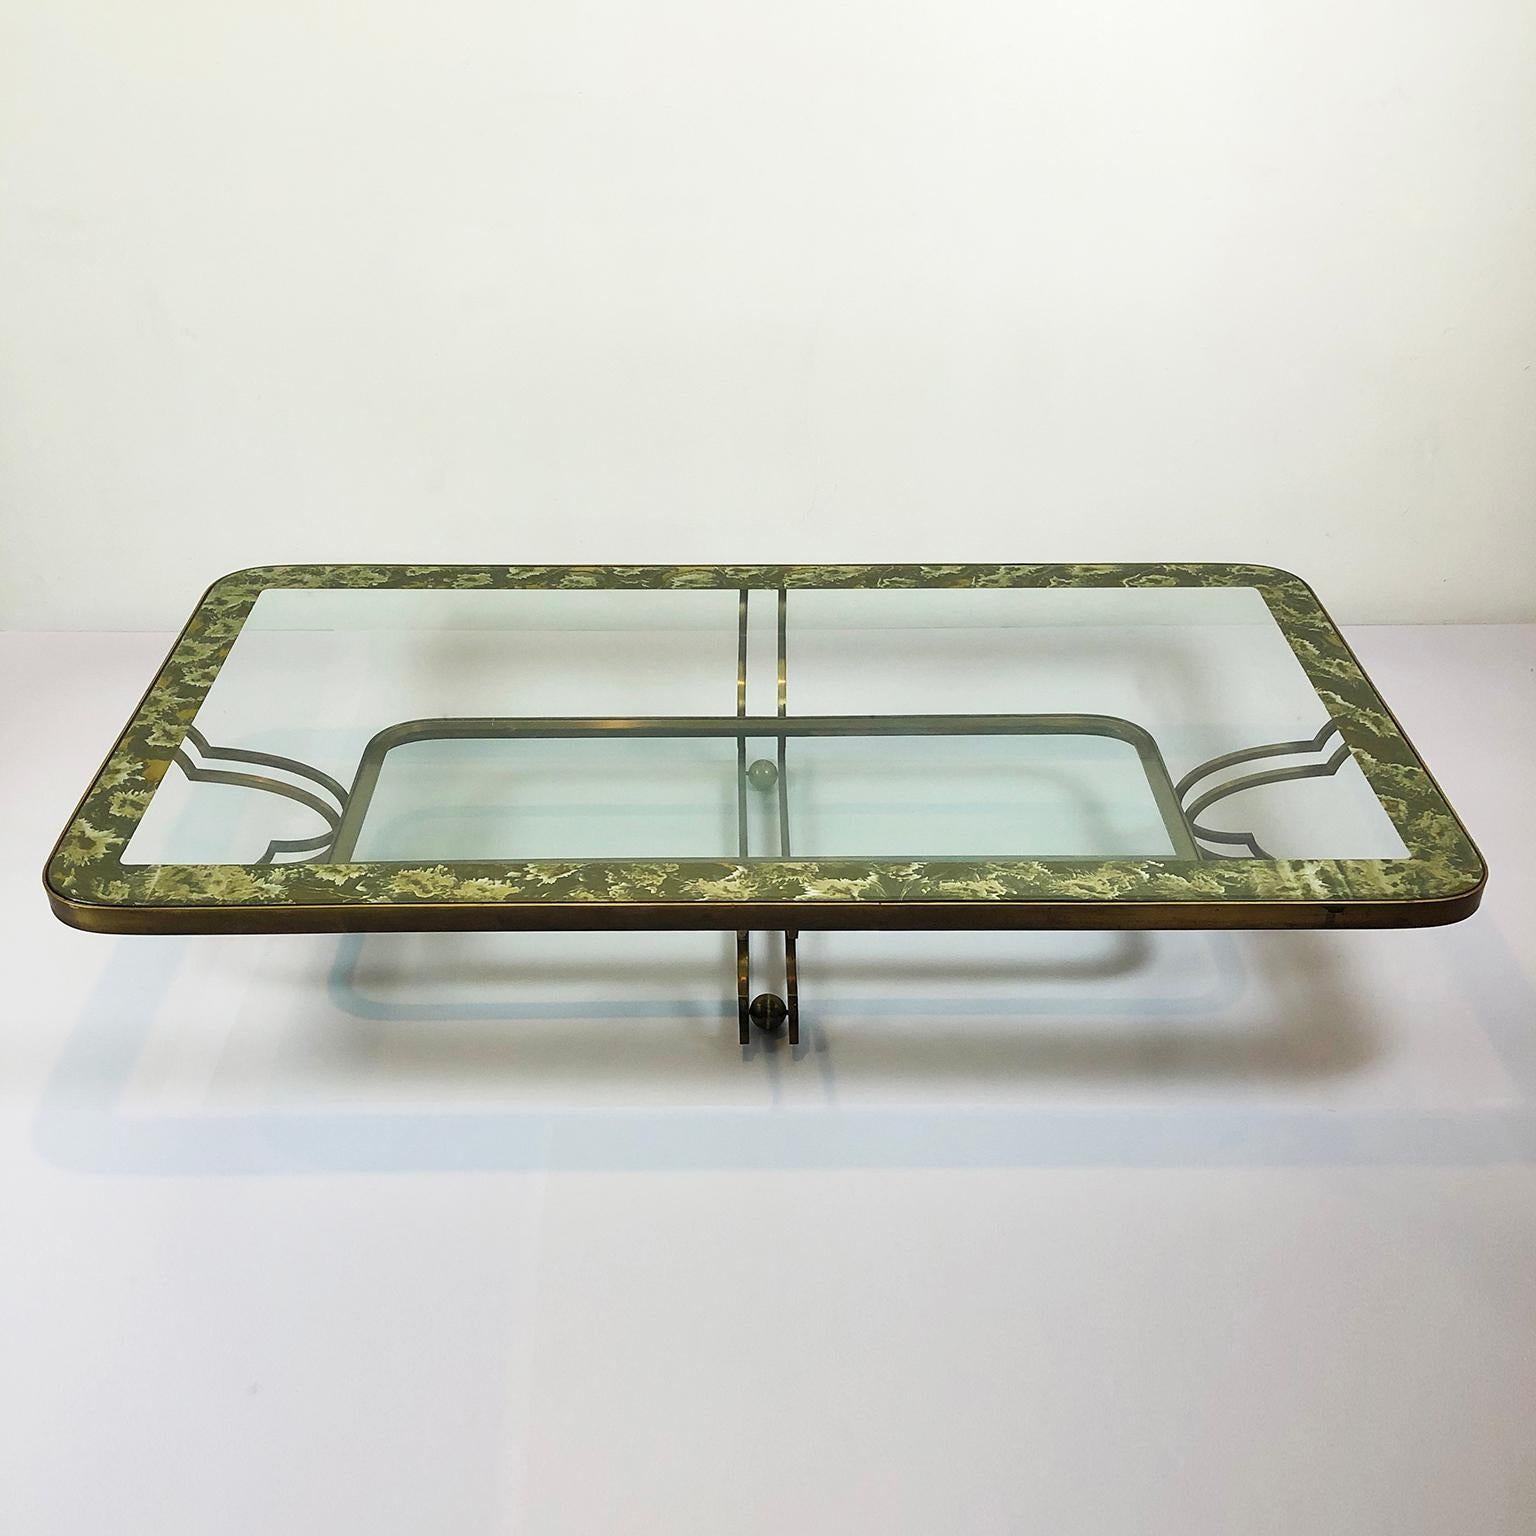 Wir bieten diesen Satz von Bronze Beistelltische und Mitteltisch von Arturo Pani circa 1950er Jahren entworfen, verwendet der Designer patiniert Bronze im Kontrast mit Glas und antiqued églomisé Spiegel für diese Kreationen.